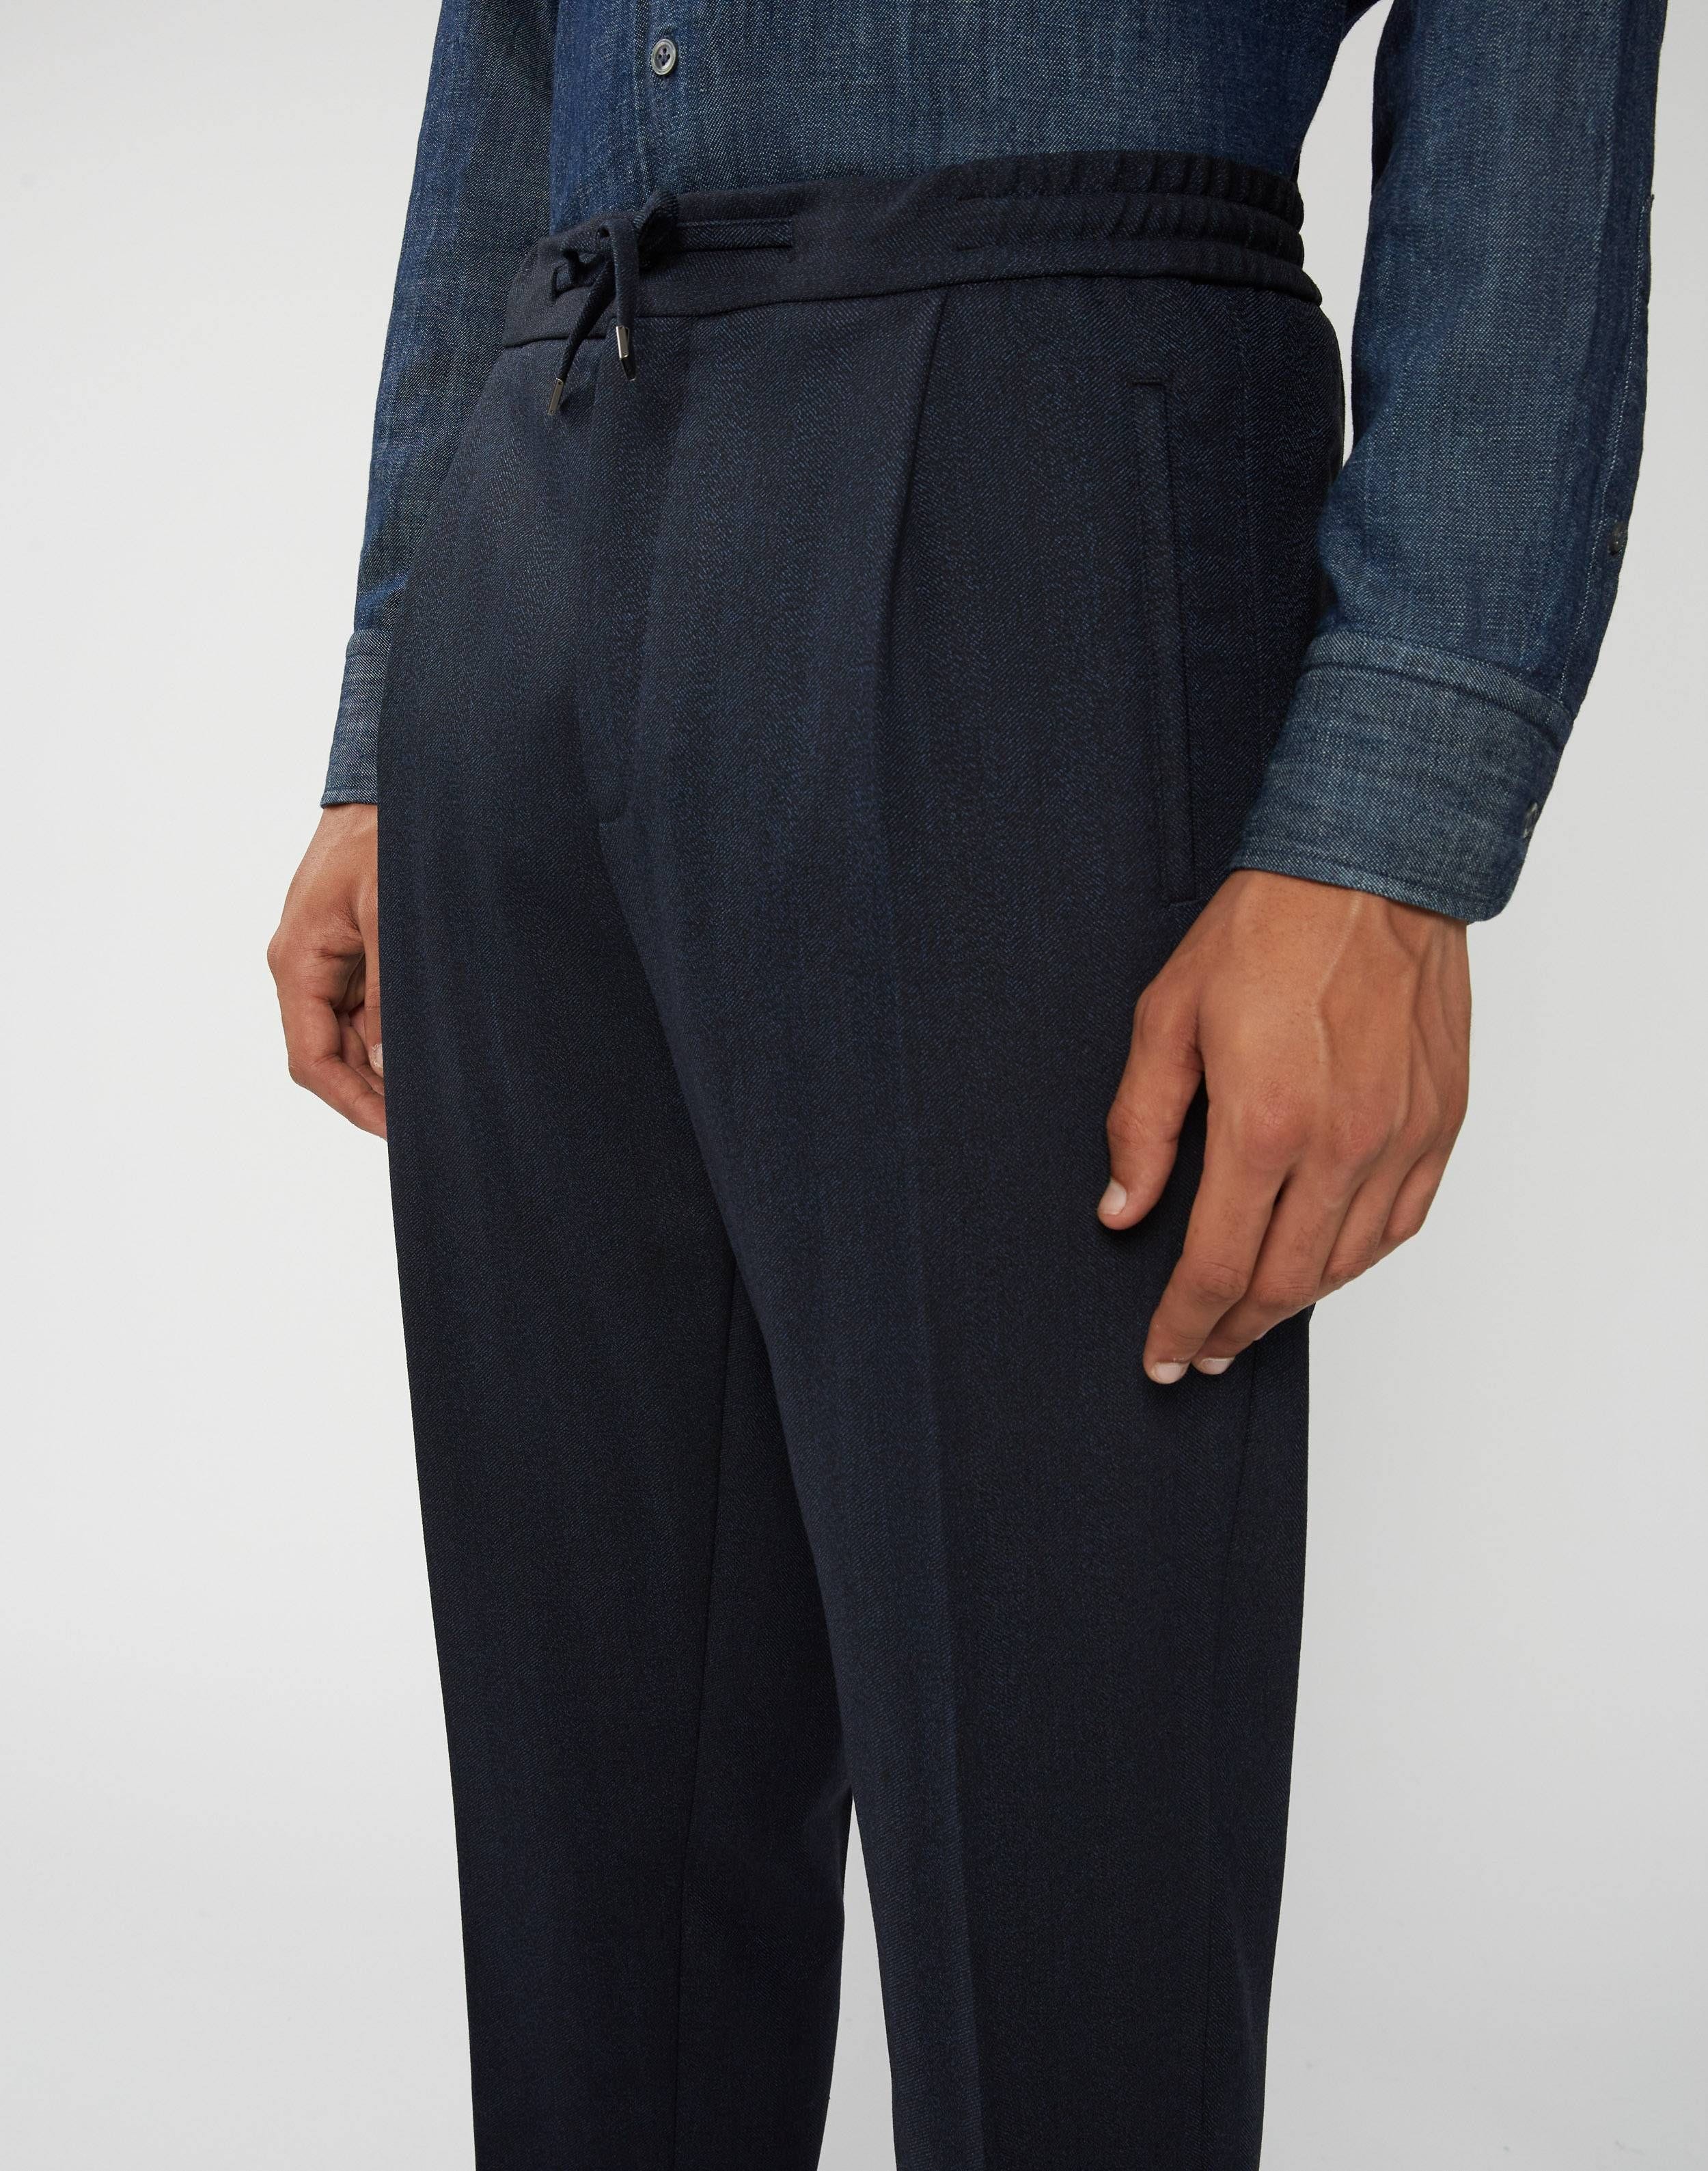 Drawstring trousers in a herringbone pattern - Easy Wear 